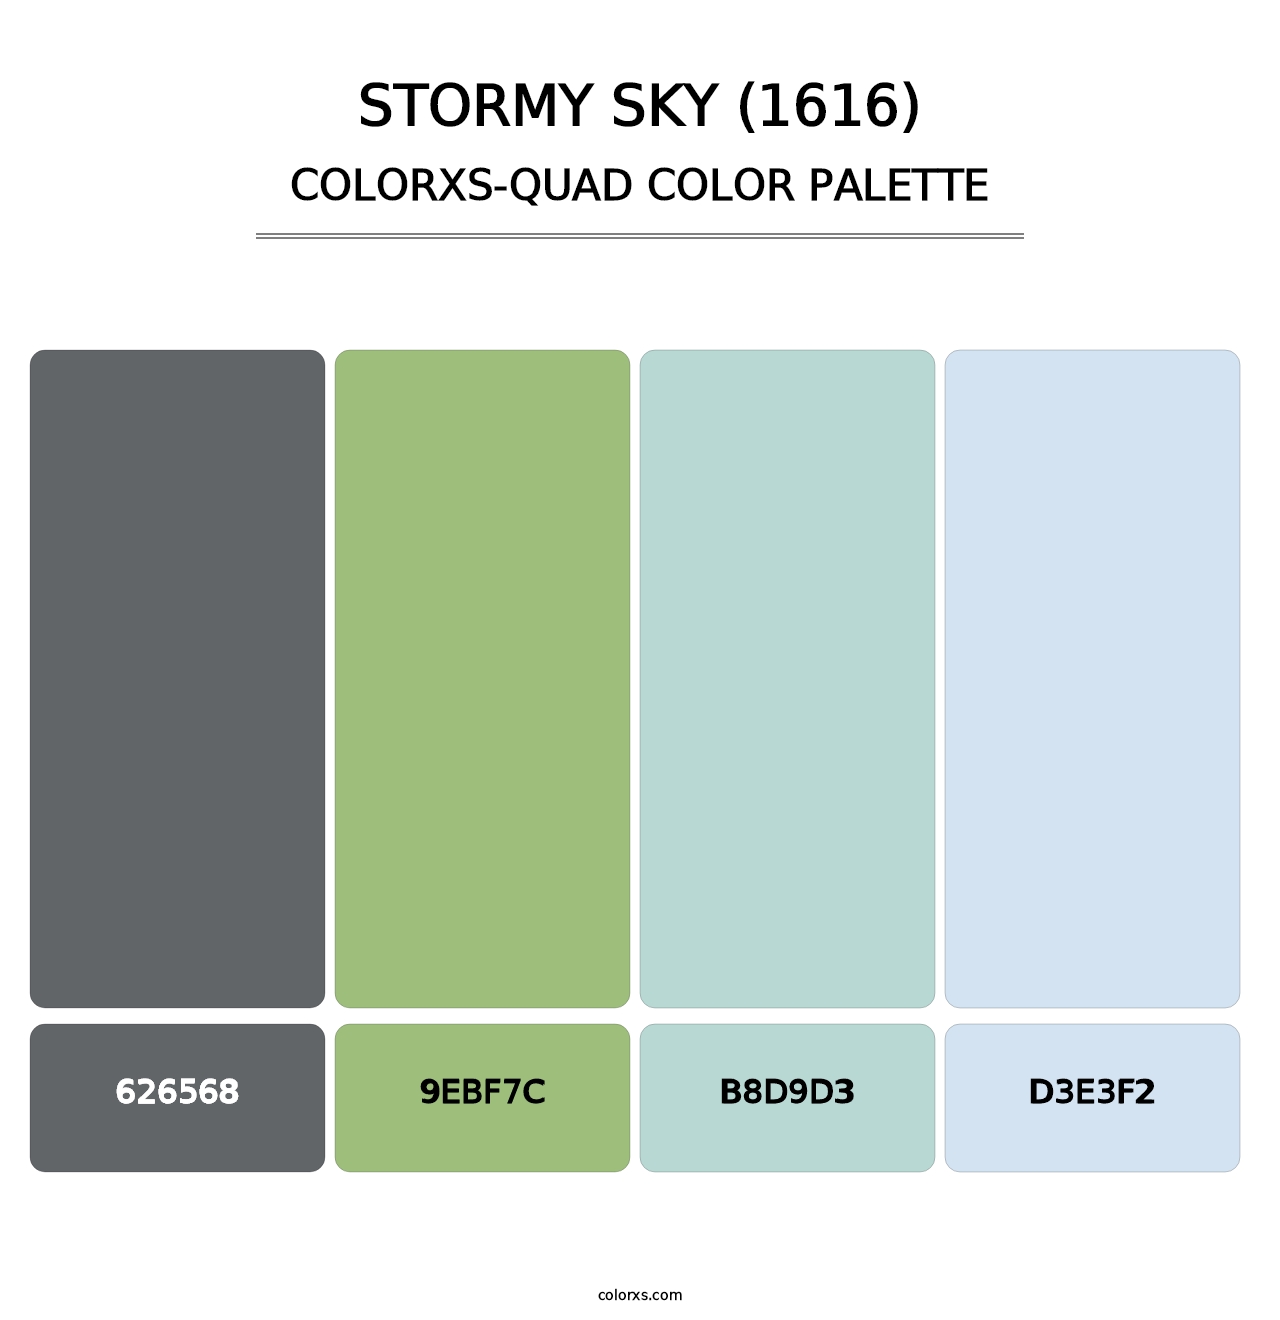 Stormy Sky (1616) - Colorxs Quad Palette